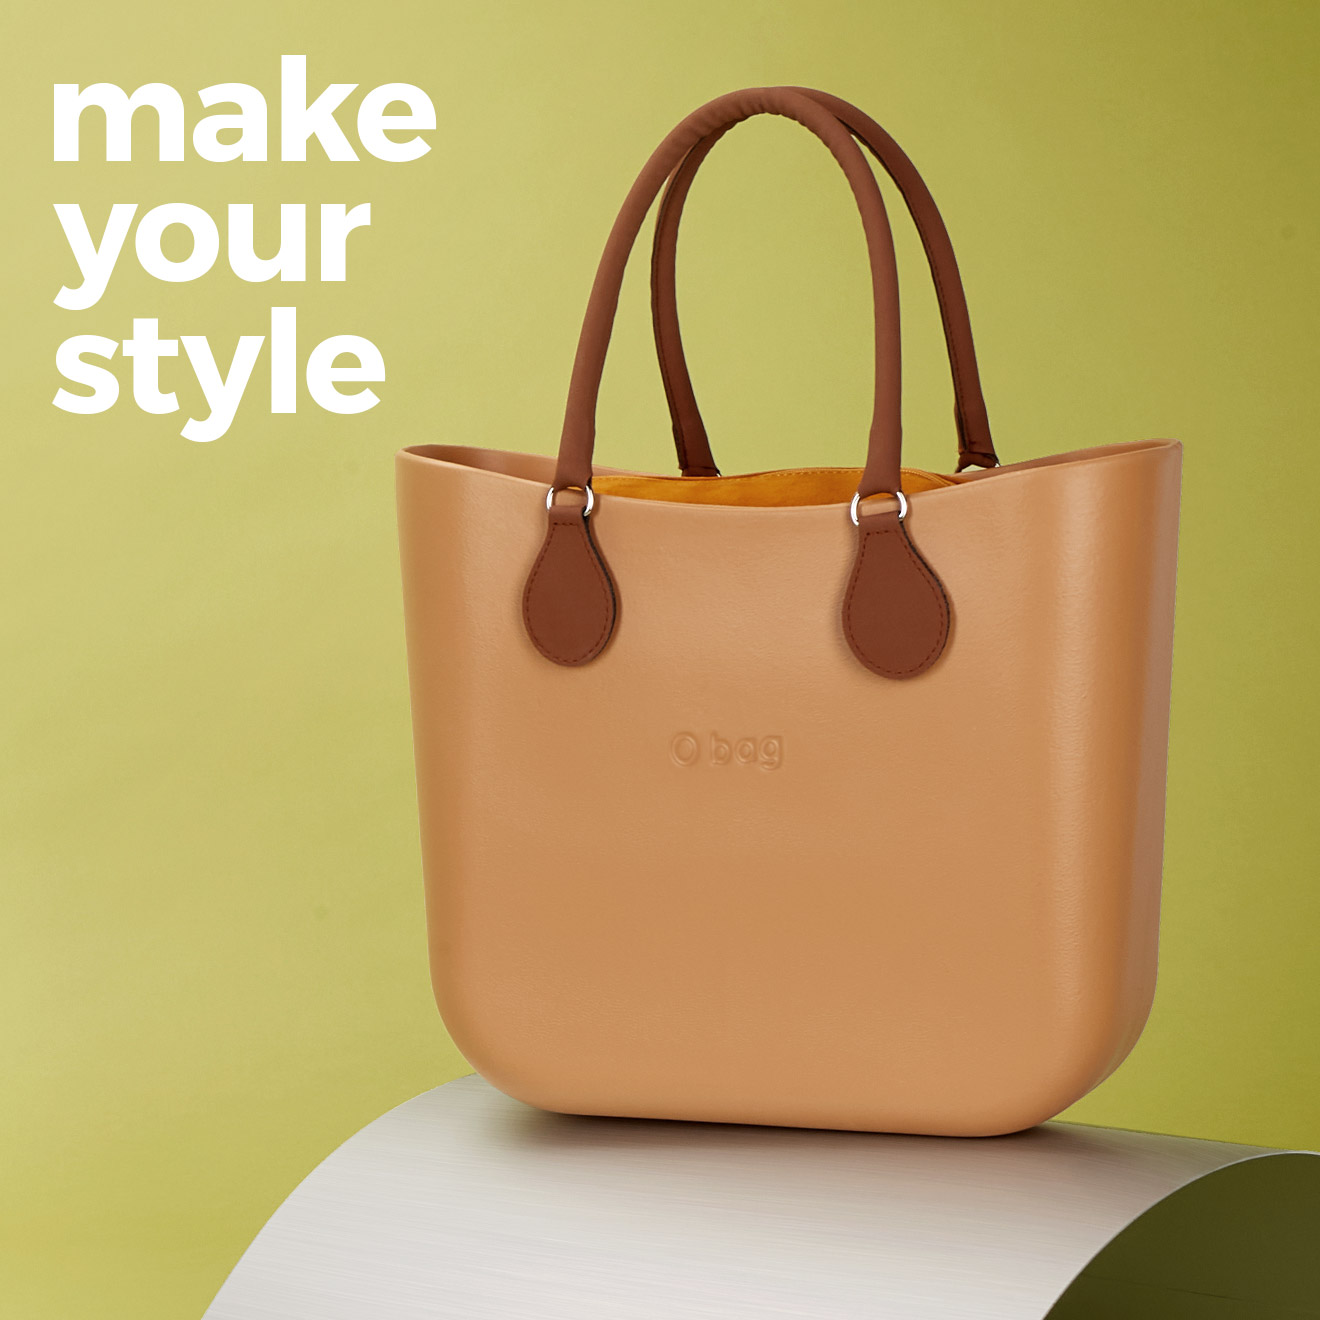 Створіть свою оригінальну і унікальну O bag. <br> Зробіть свій стиль неповторним! <br> Збирати і кастомізувати O bag - це просто і весело